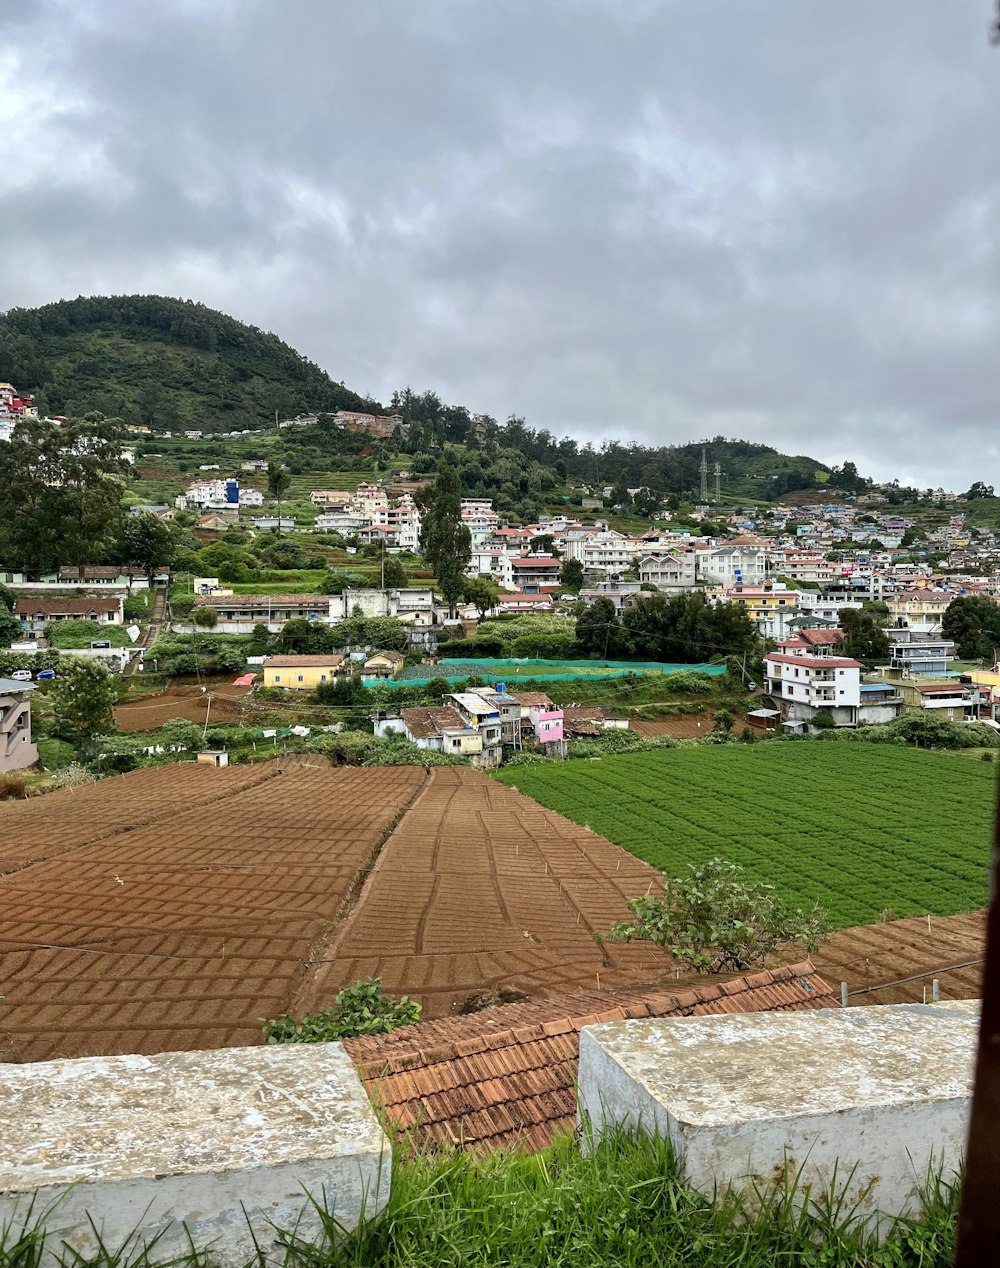 Una vista de una ciudad desde una colina